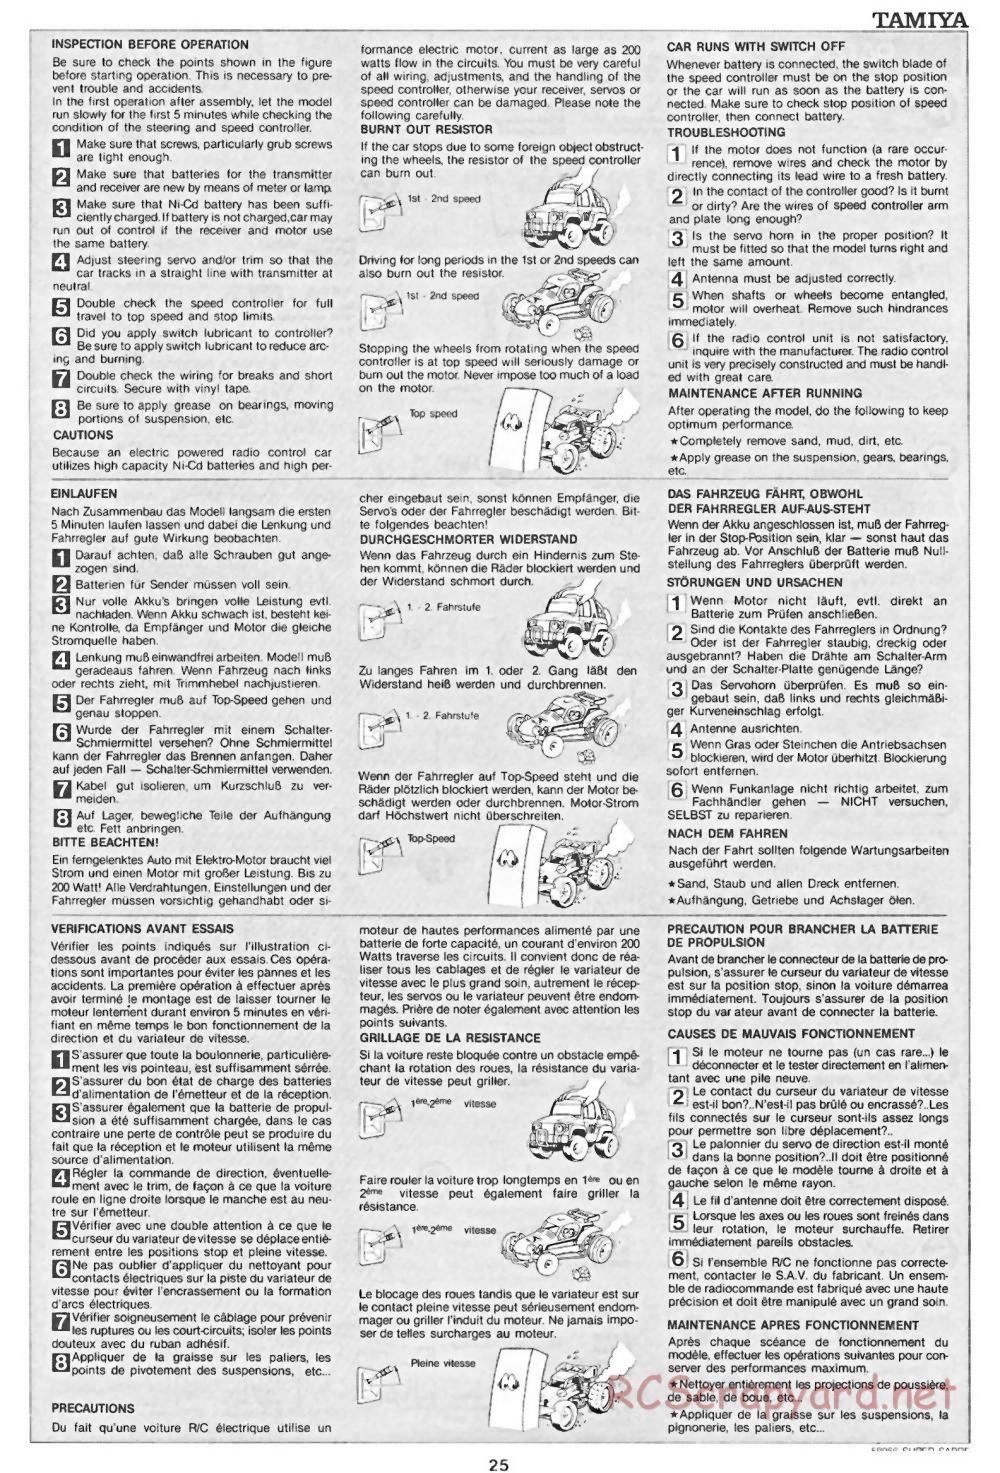 Tamiya - Super Sabre - 58066 - Manual - Page 25